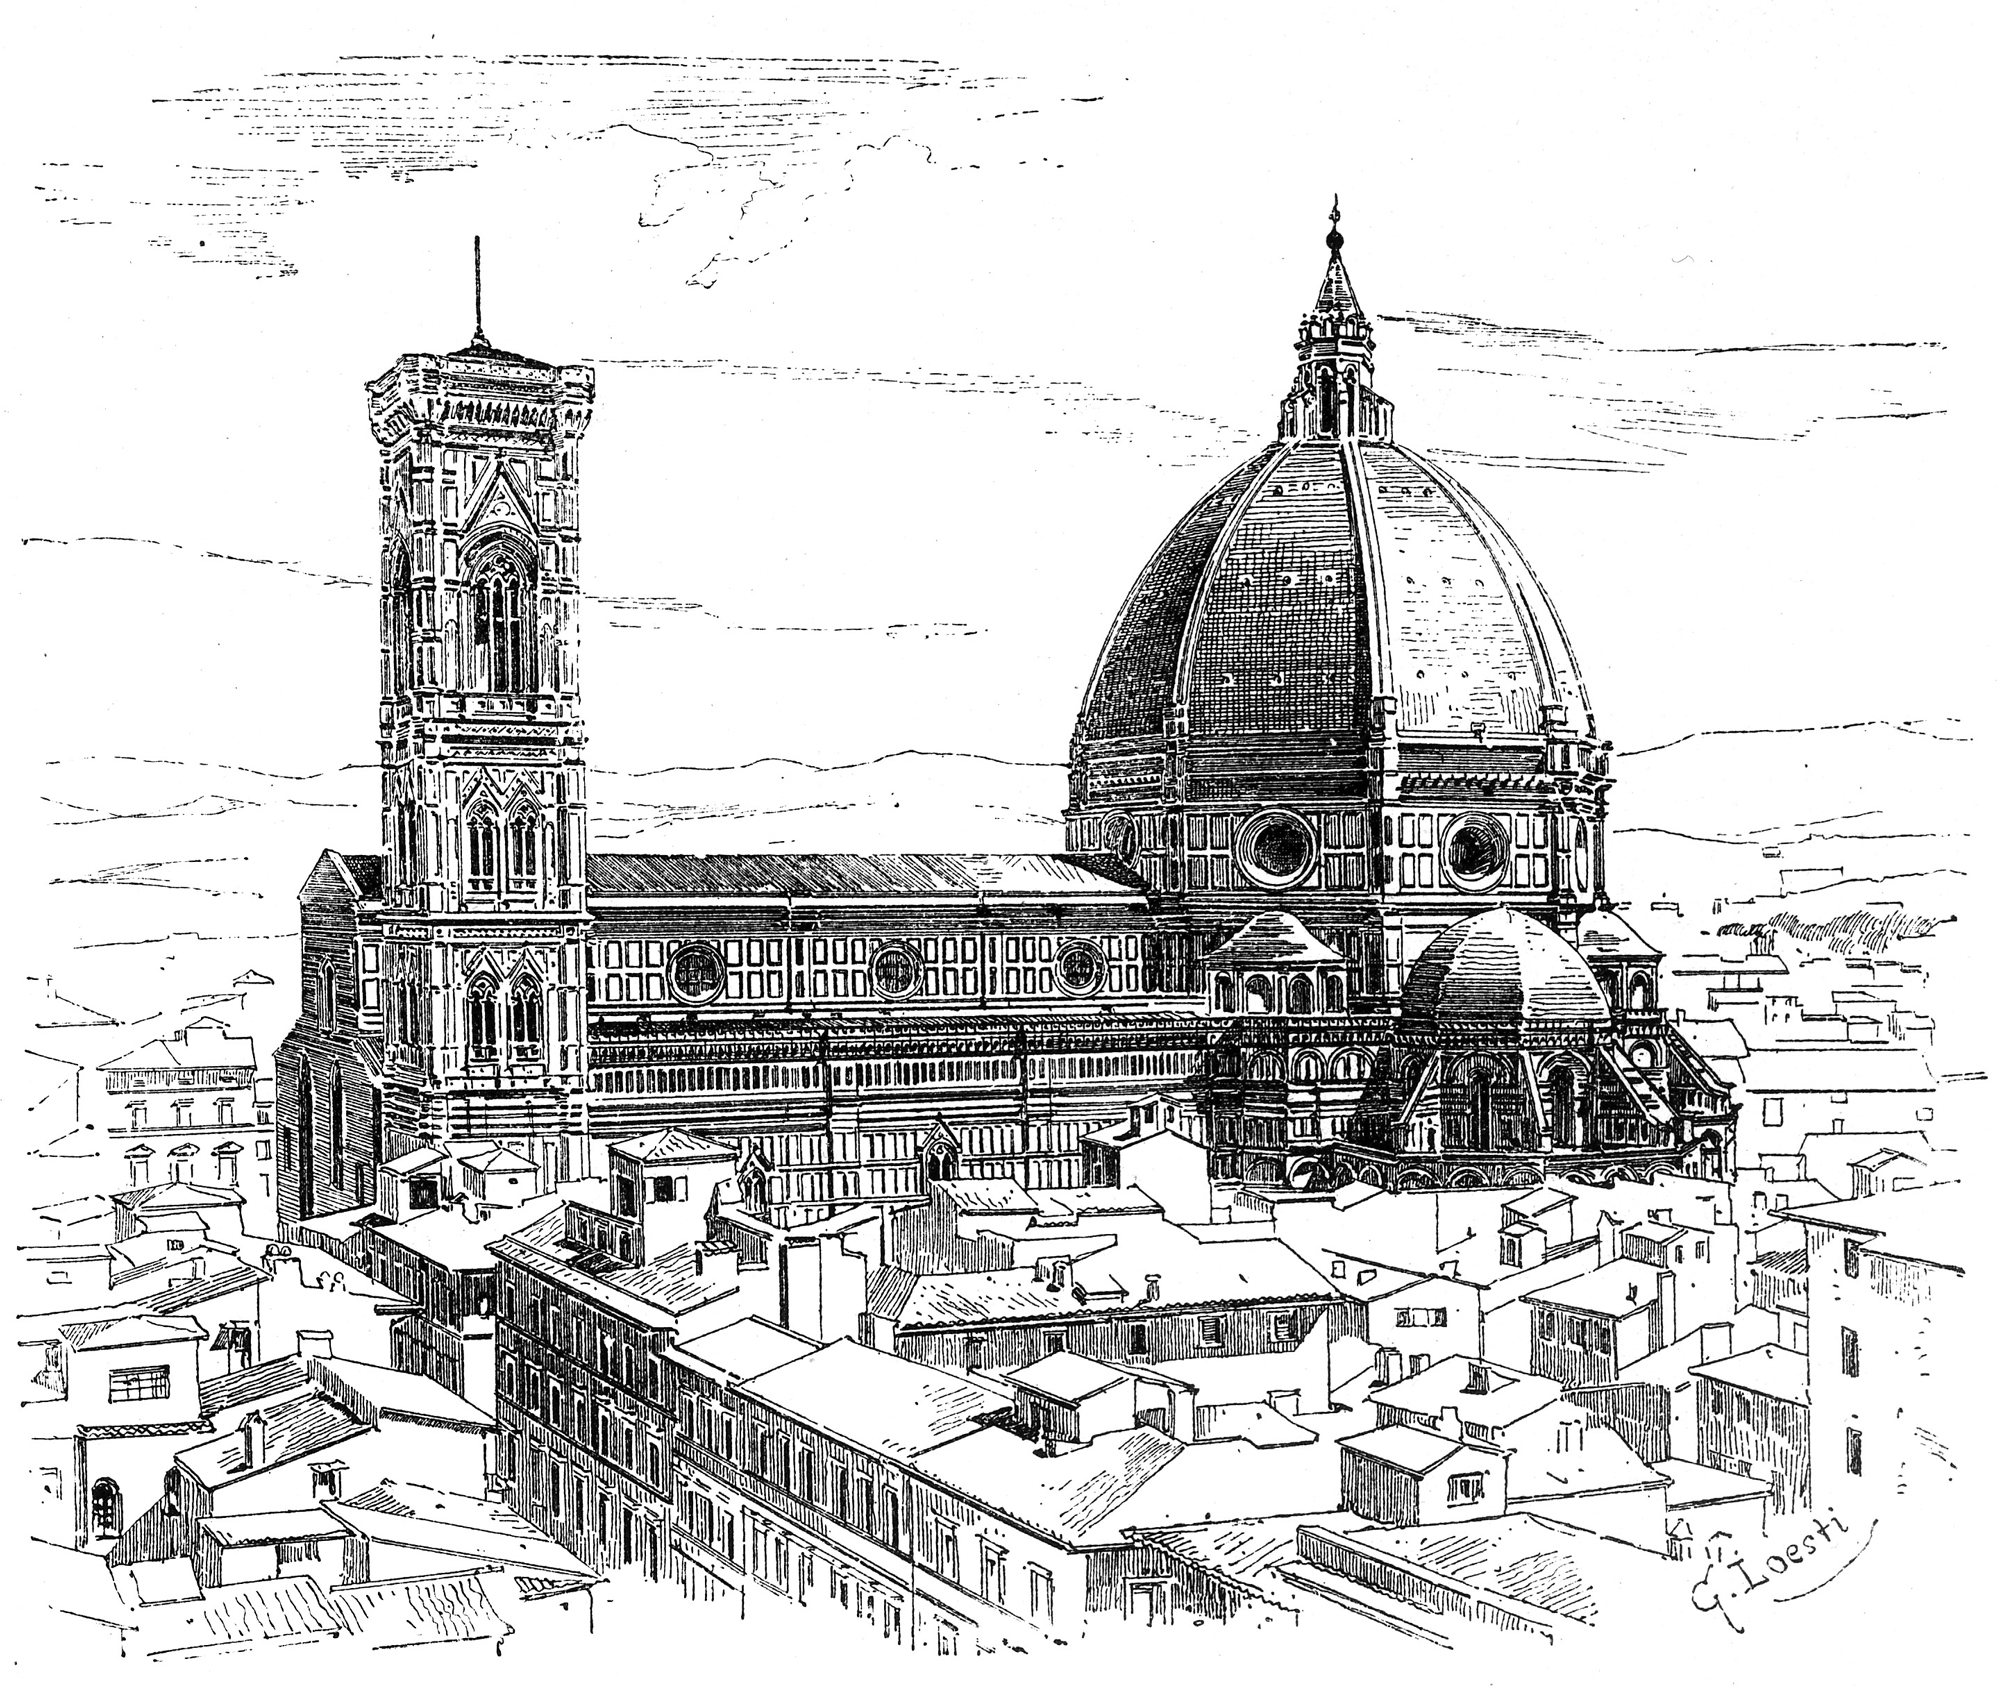 1436: Nach der Fertigstellung der Kuppel durch Filippo Brunelleschi